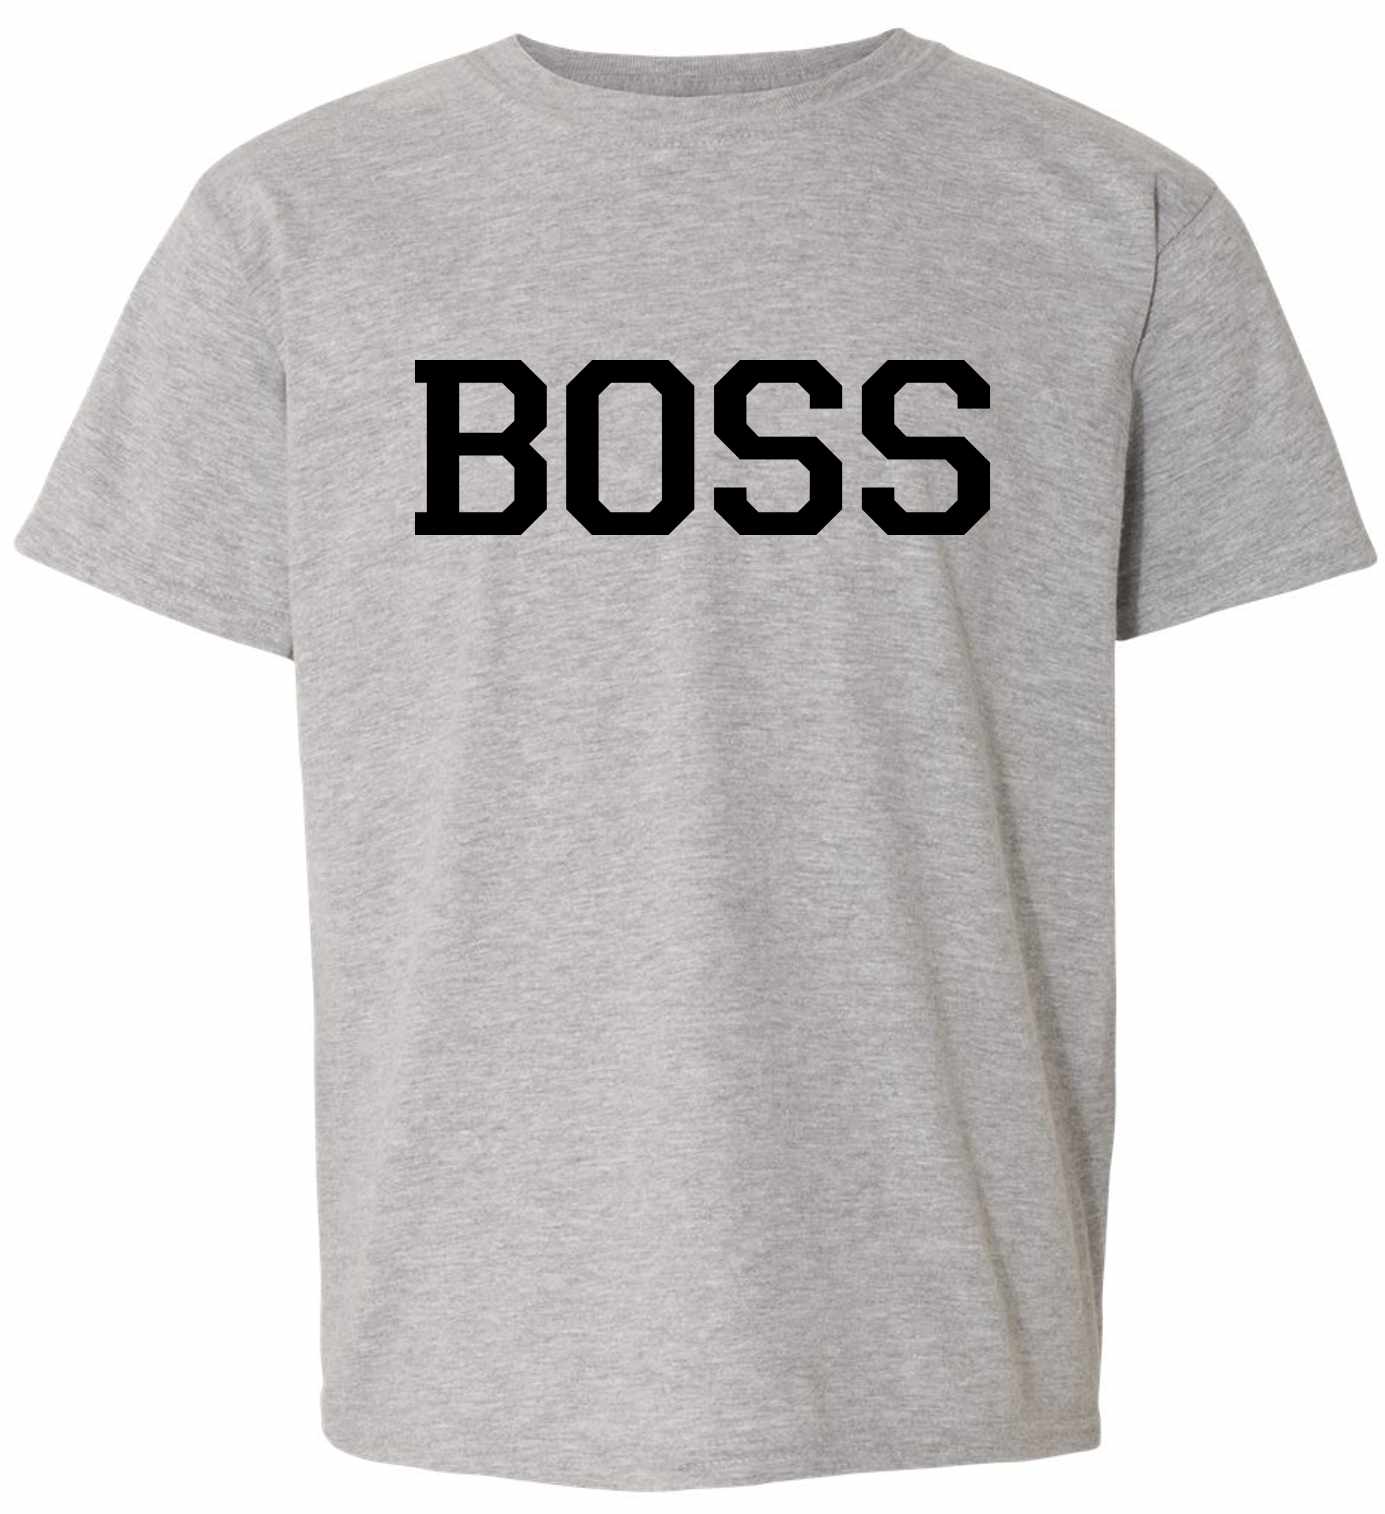 BOSS on Kids T-Shirt (#441-201)